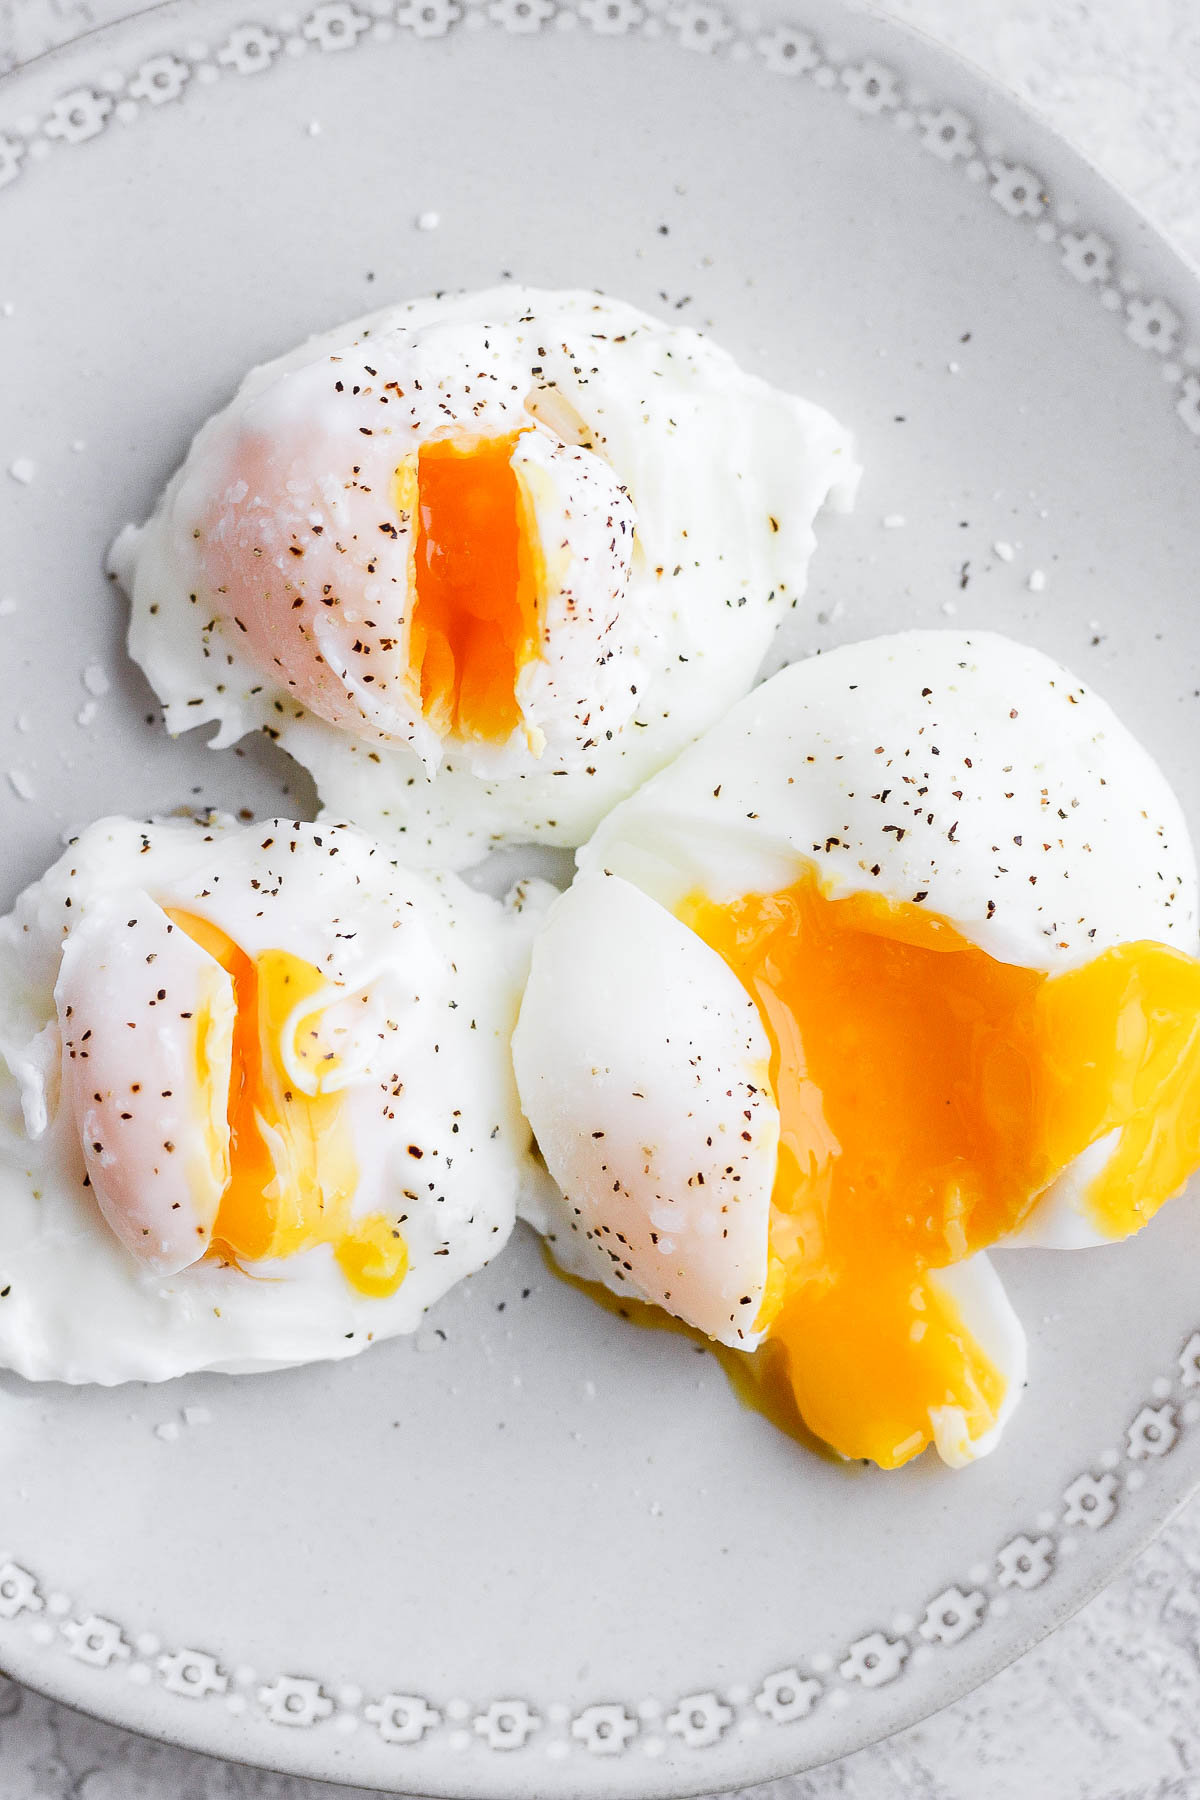 Cách làm trứng chần hoàn hảo như đầu bếp nhà hàng - Ảnh 9